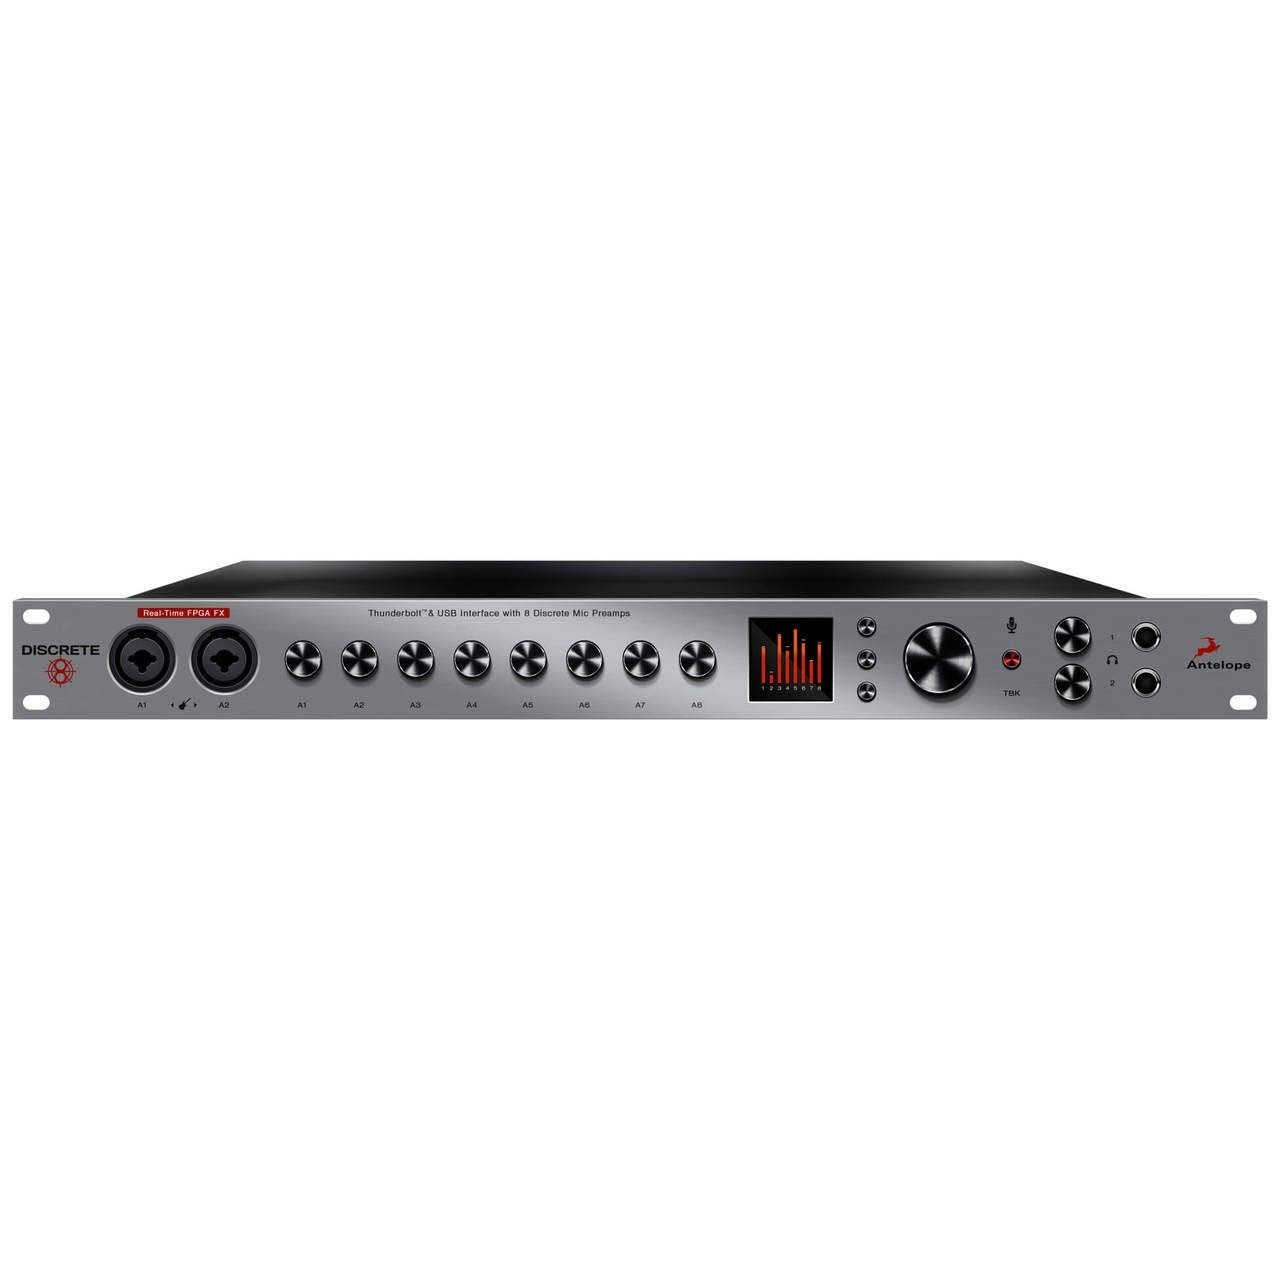 Antelope Audio Discrete 8 Premium Fx - Thunderbolt audio interface - Variation 1